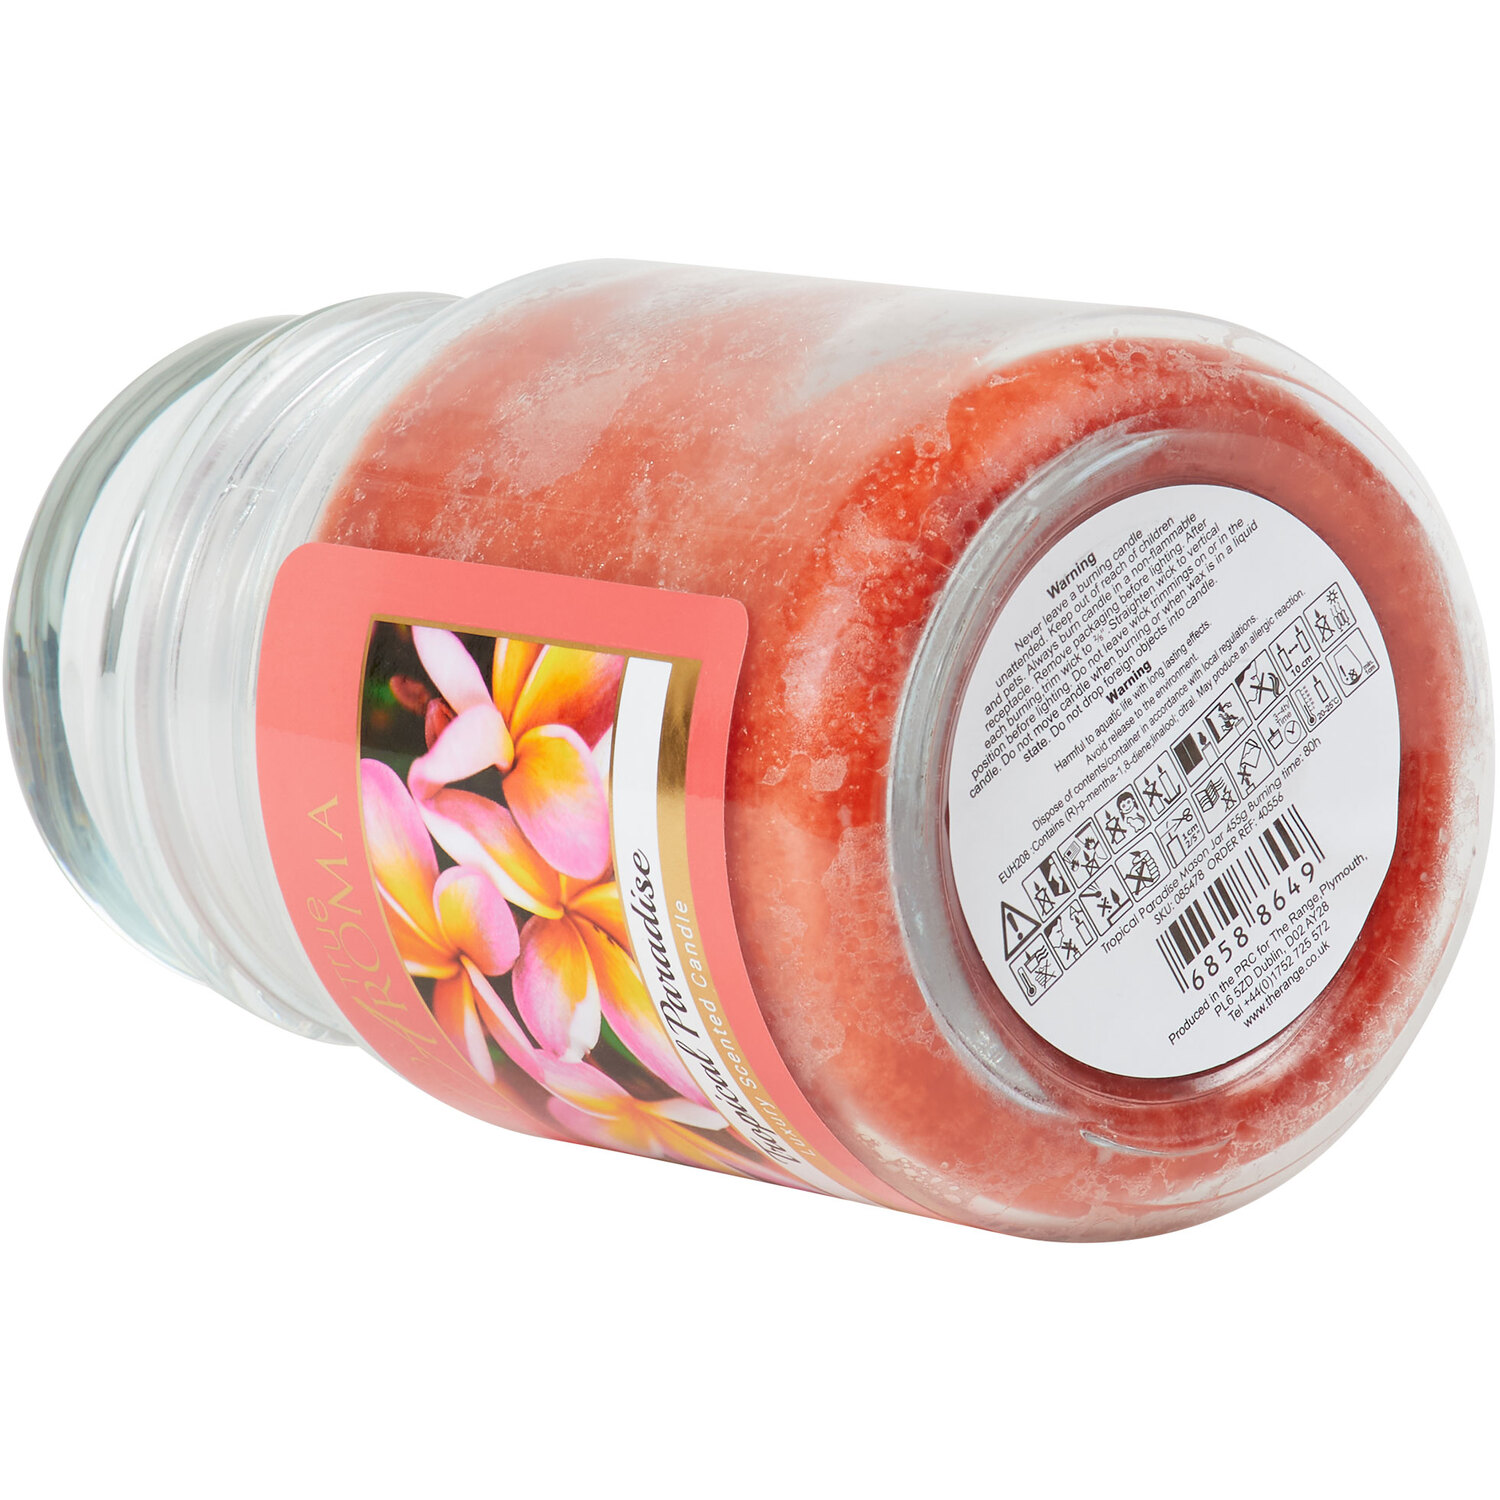 Tropical Paradise Mason Jar Candle - Orange Image 4